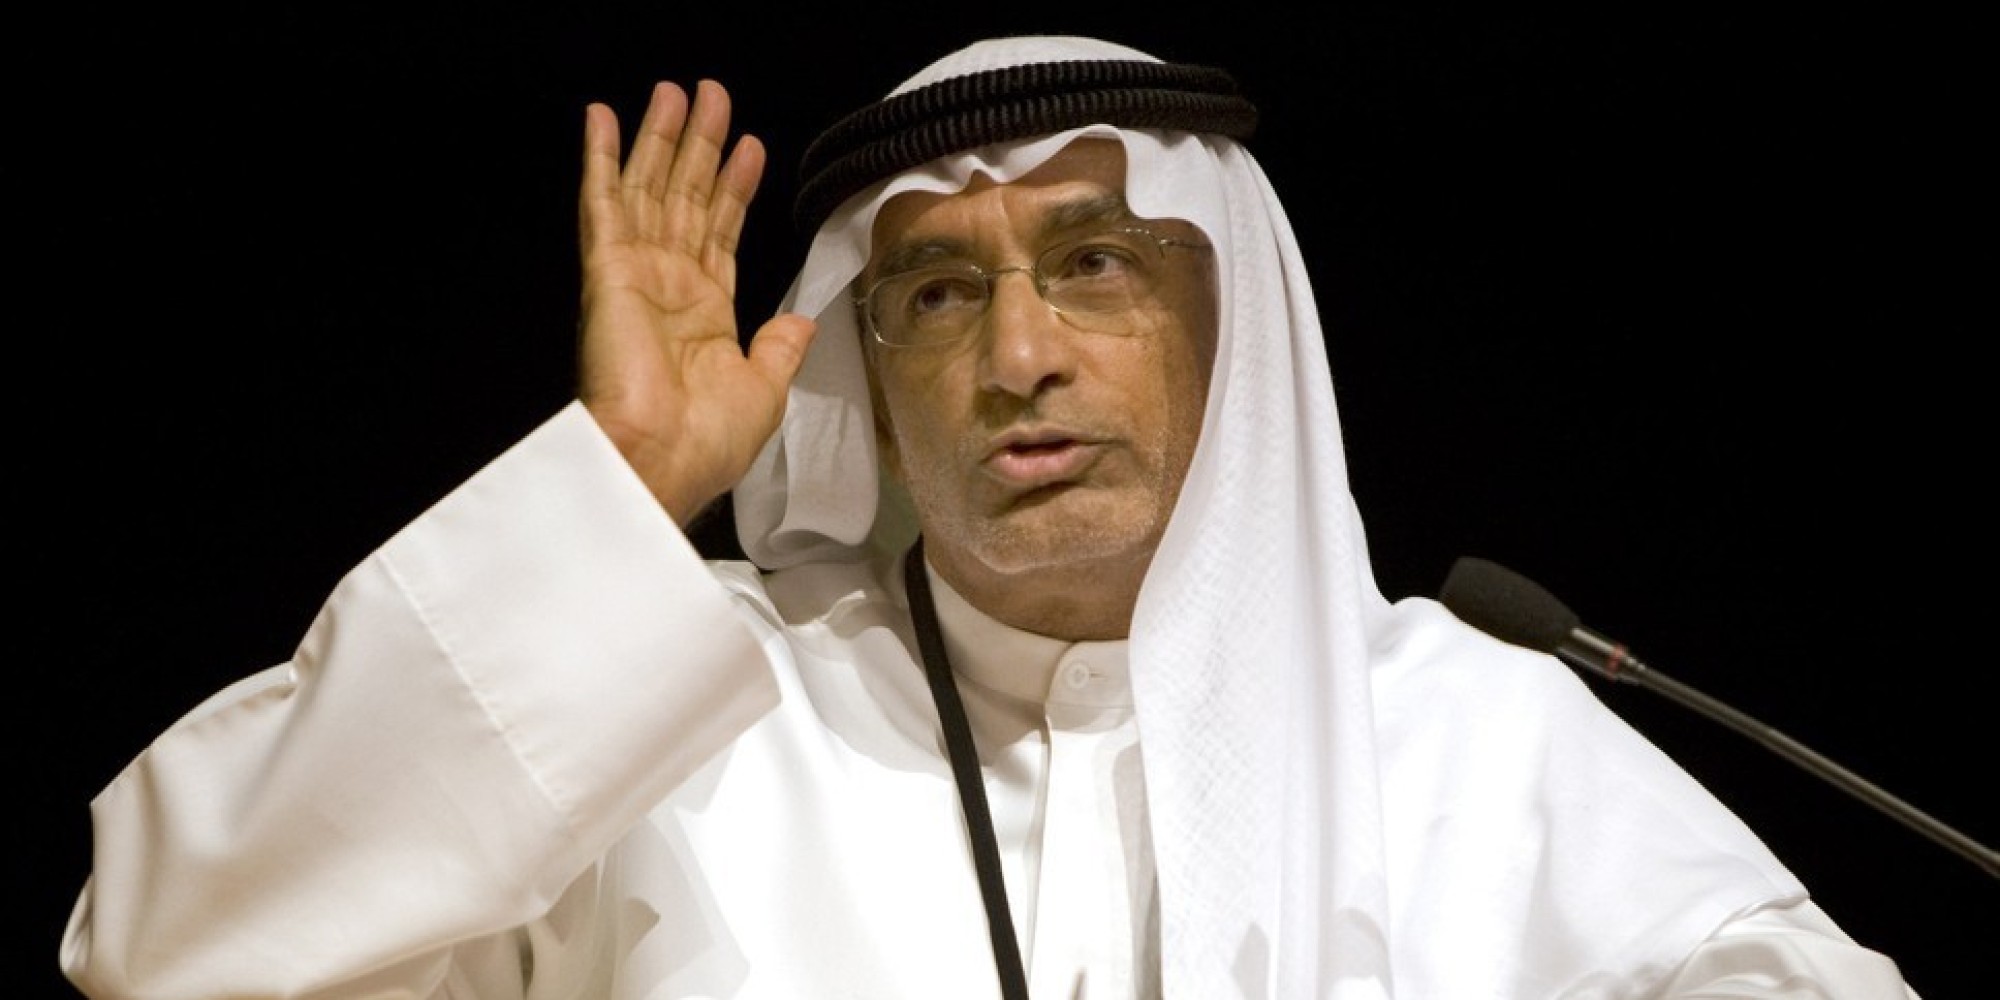  منظمة العفو الدولية تؤكد اعتقال الإمارات لمستشار بن زايد